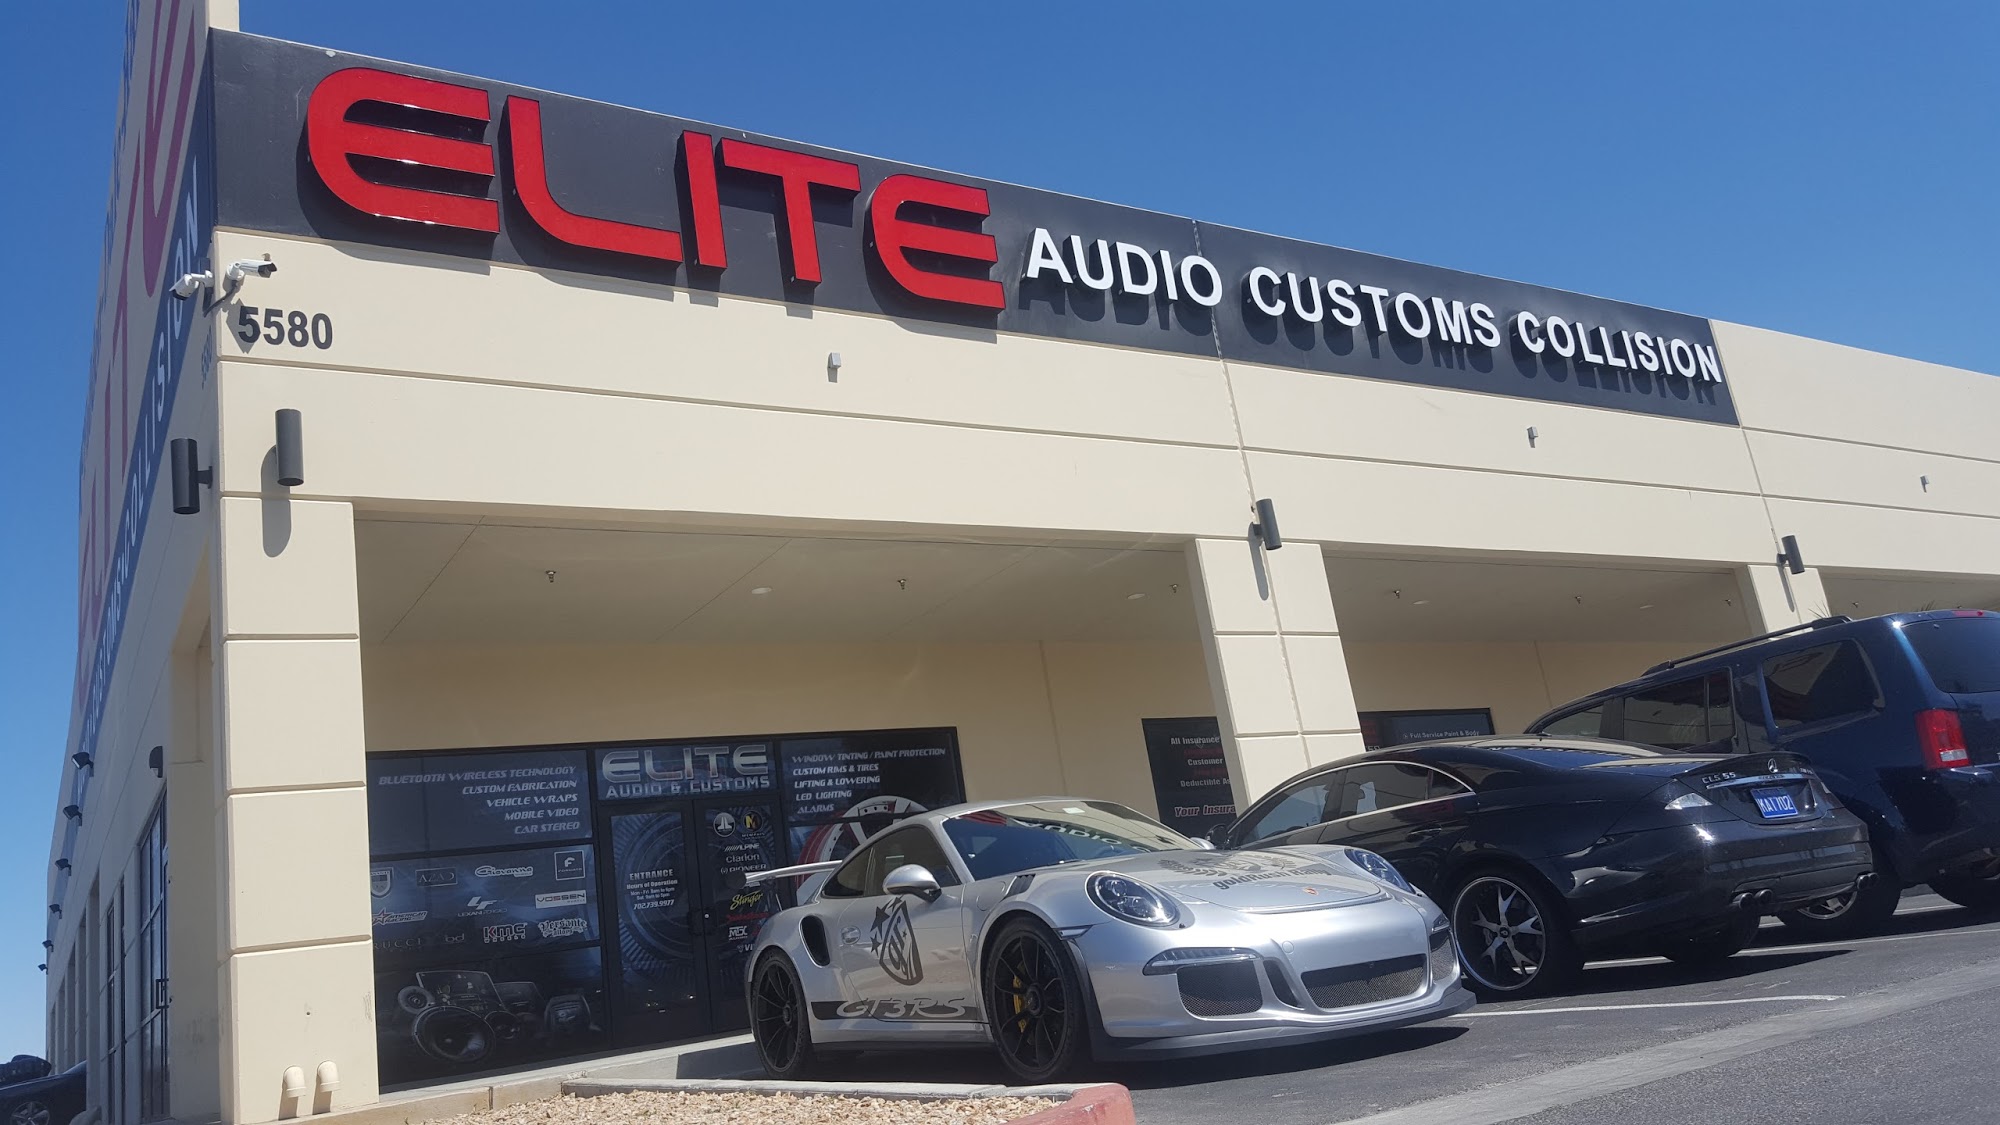 Elite Audio Customs & Collision